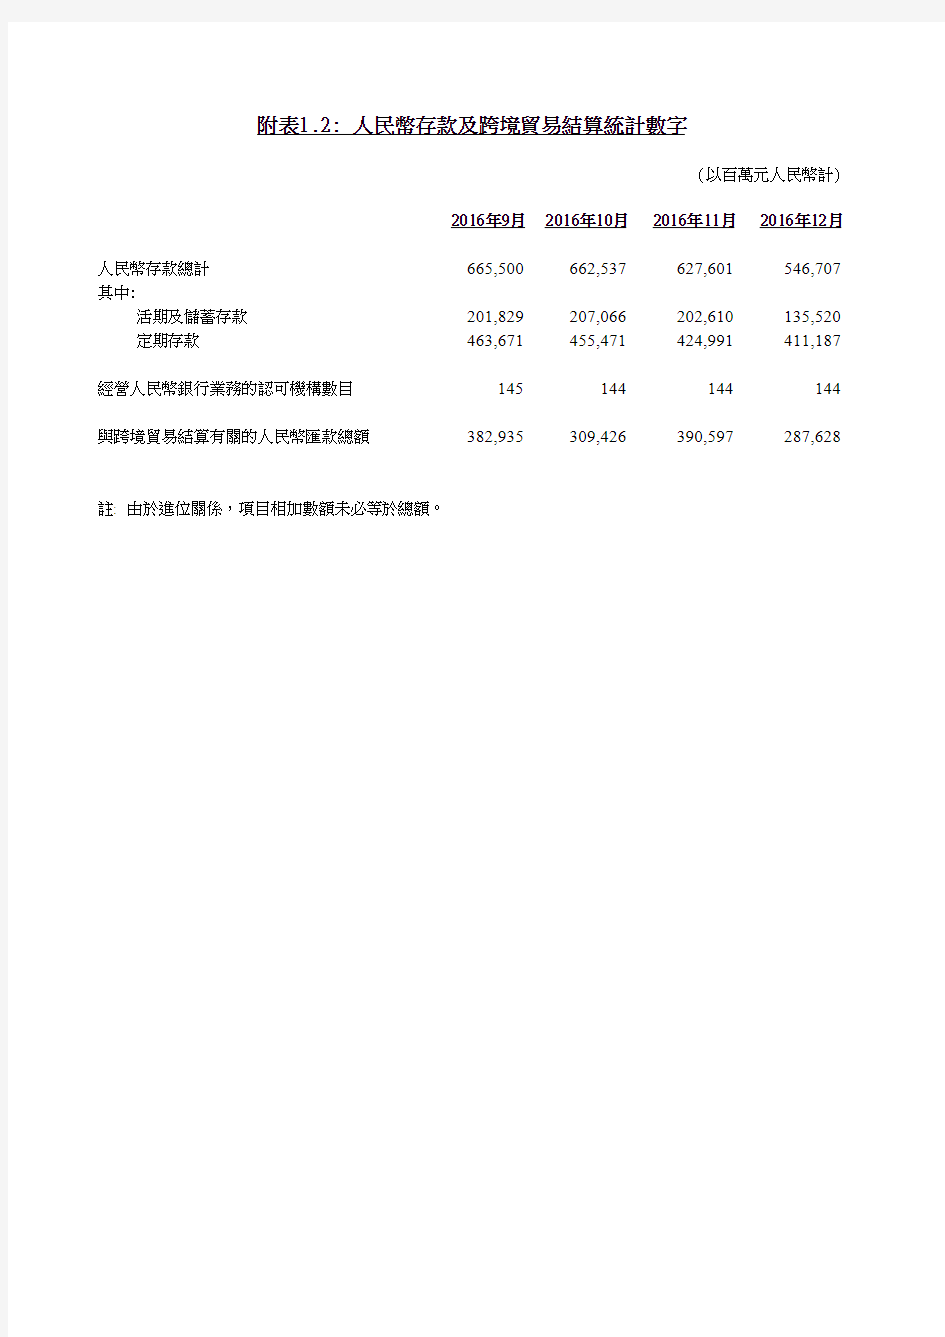 香港金融2016年统计数据